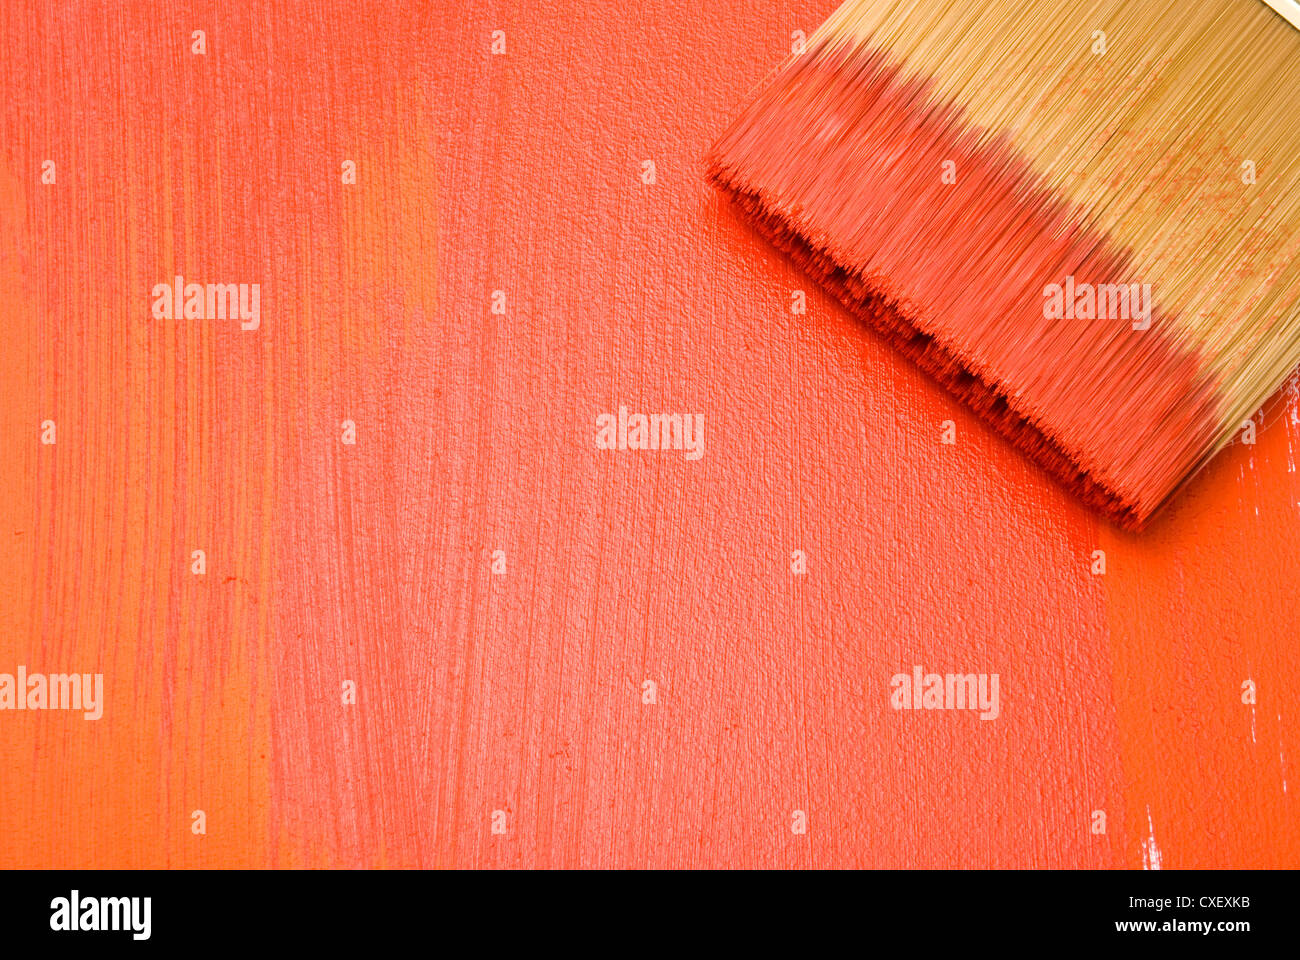 Spazzola professionale con vernice rossa su uno sfondo bianco Foto Stock